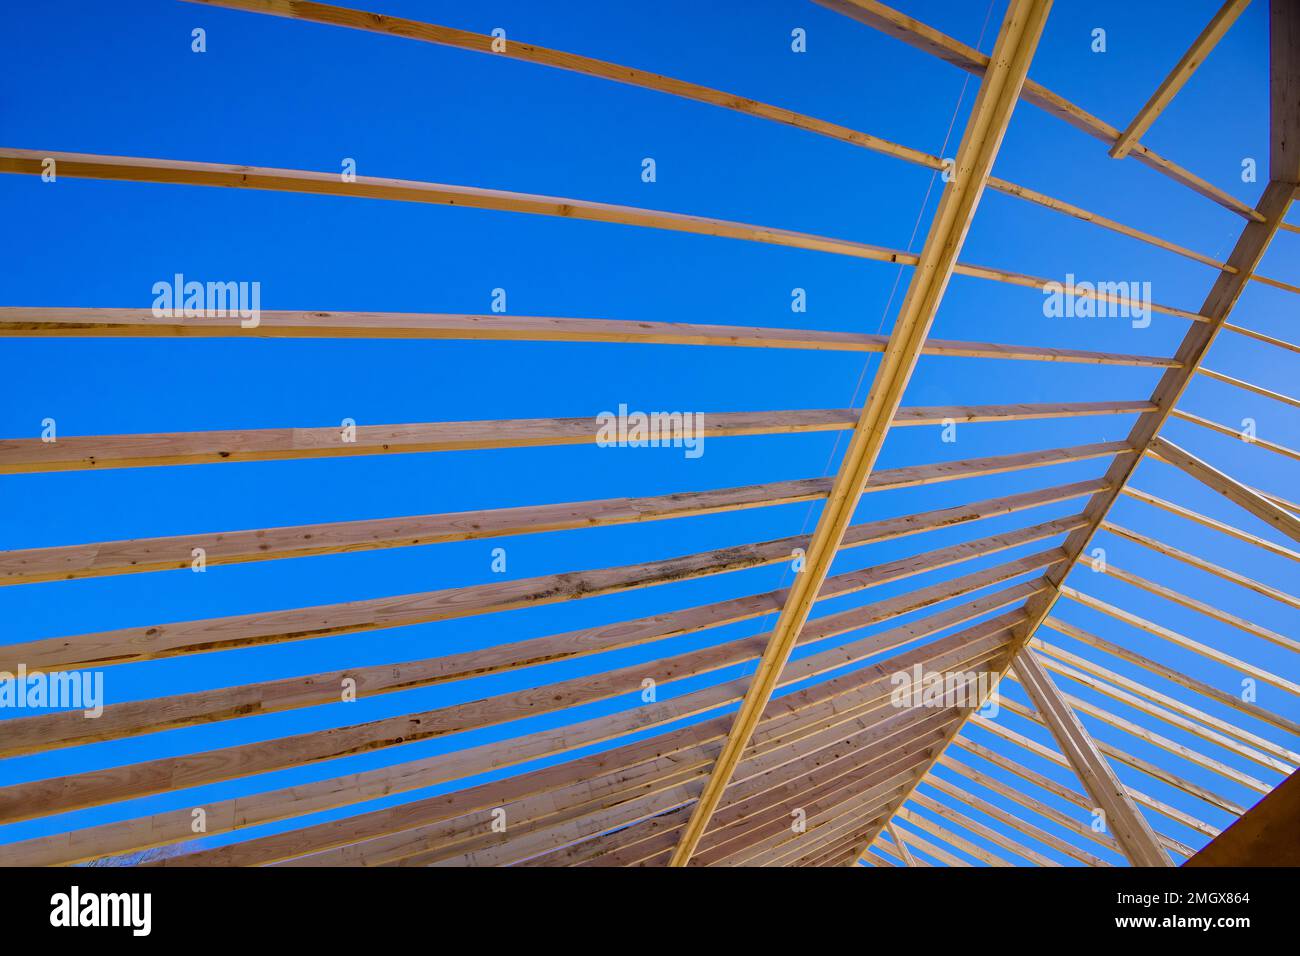 La construction d'une structure encadrée consiste en une poutre intérieure composée de panneaux de bois fixés à des barres de support de toit Banque D'Images